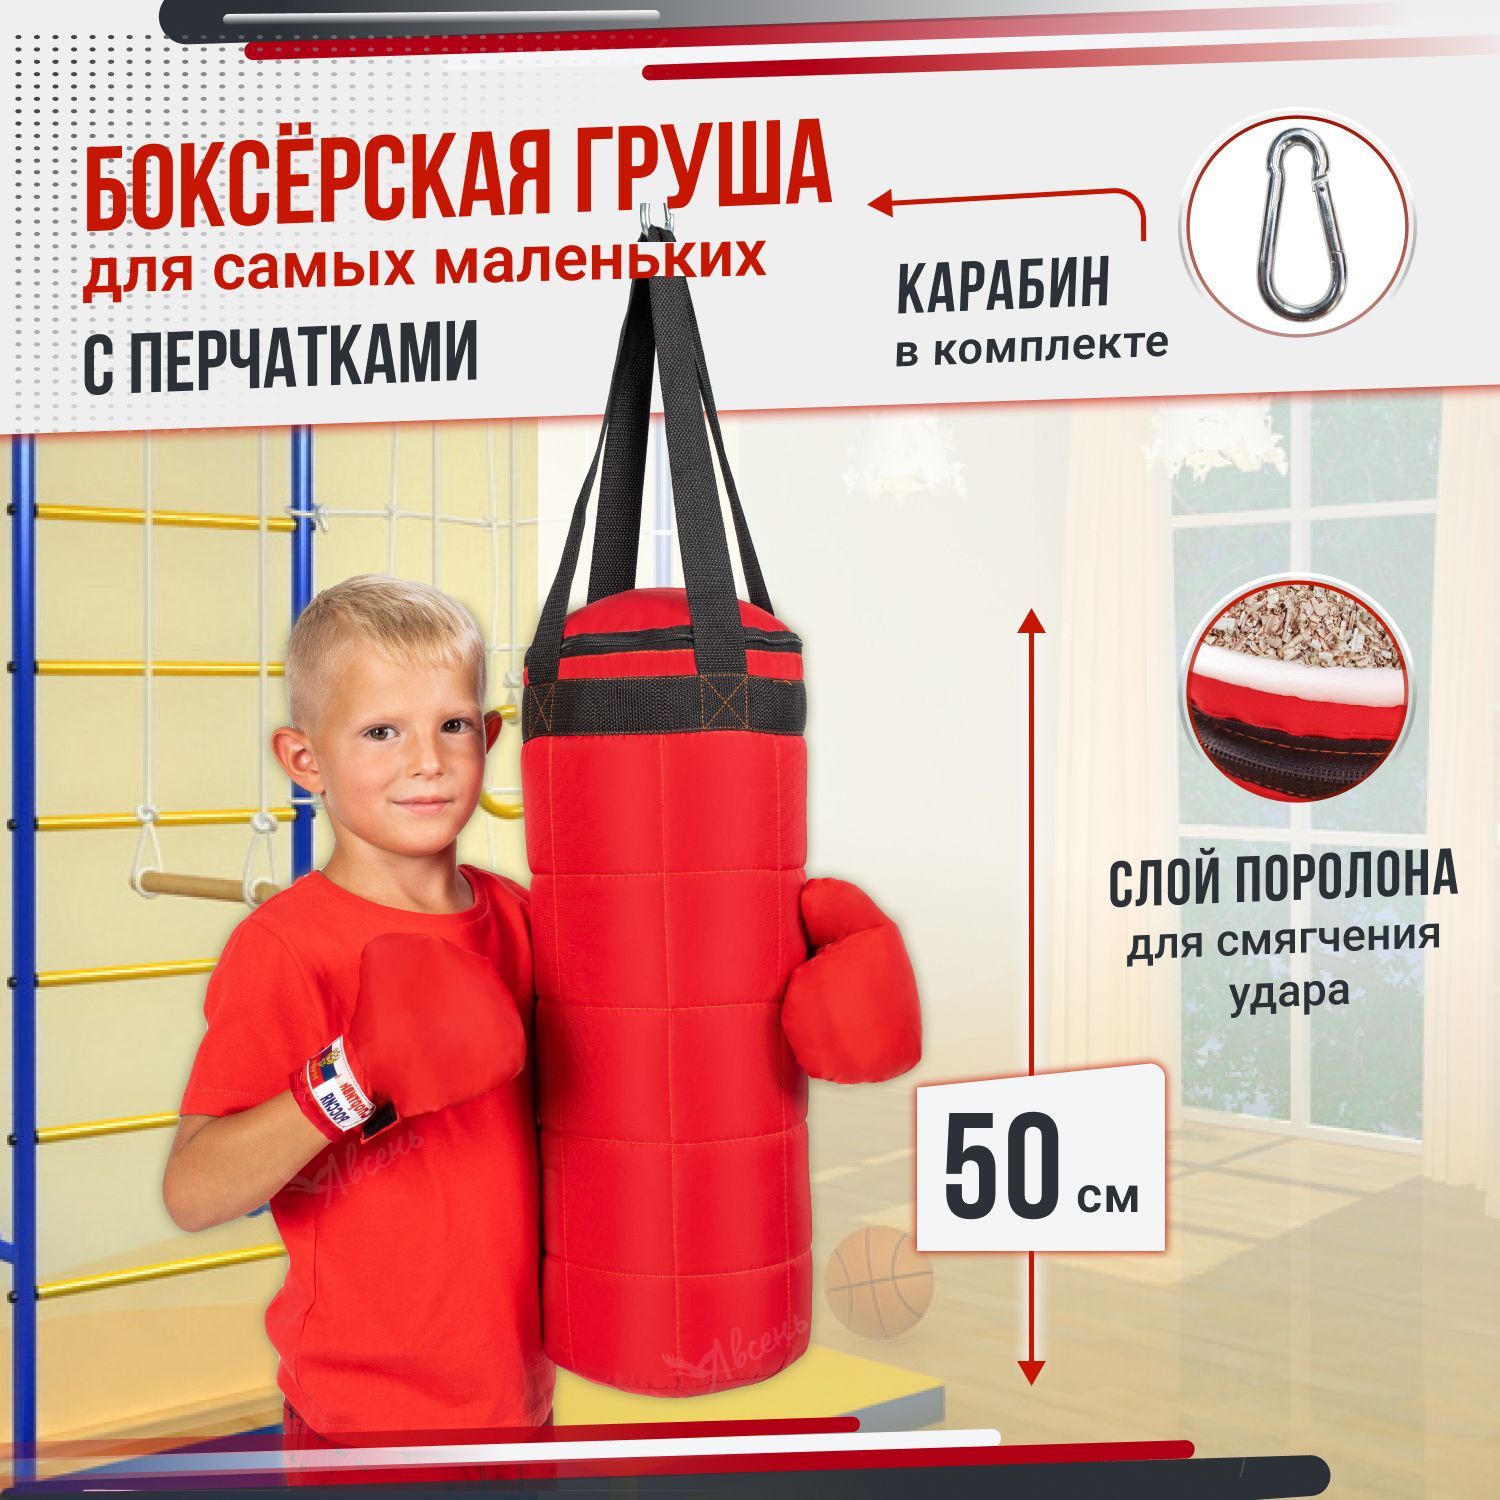 Боксерскийнабордетский-Грушабоксерскаядетскаяподвесная50см,наборсперчатками,спортивныйкомплексдлядомаиулицы